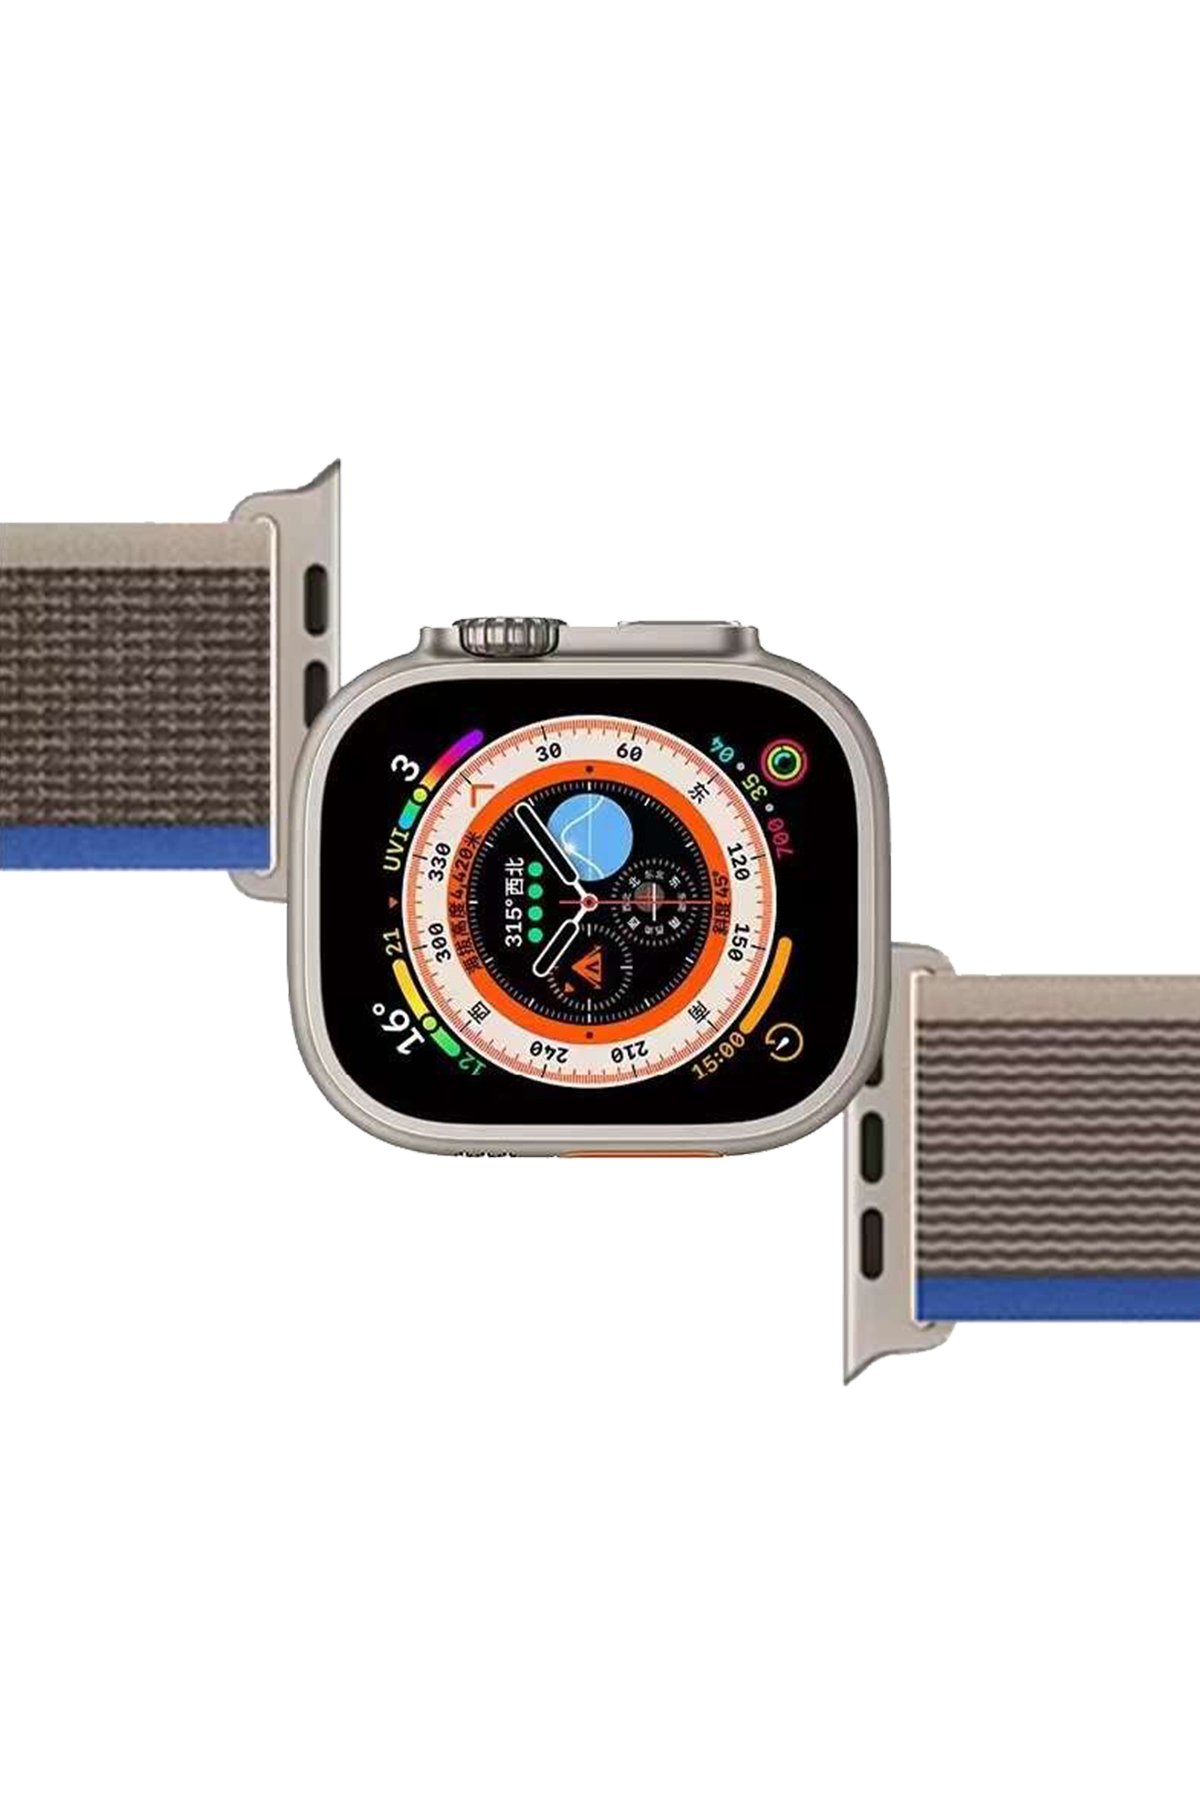 Newface Apple Watch 45mm KR415 Luaz Deri Kordon - Kahverengi